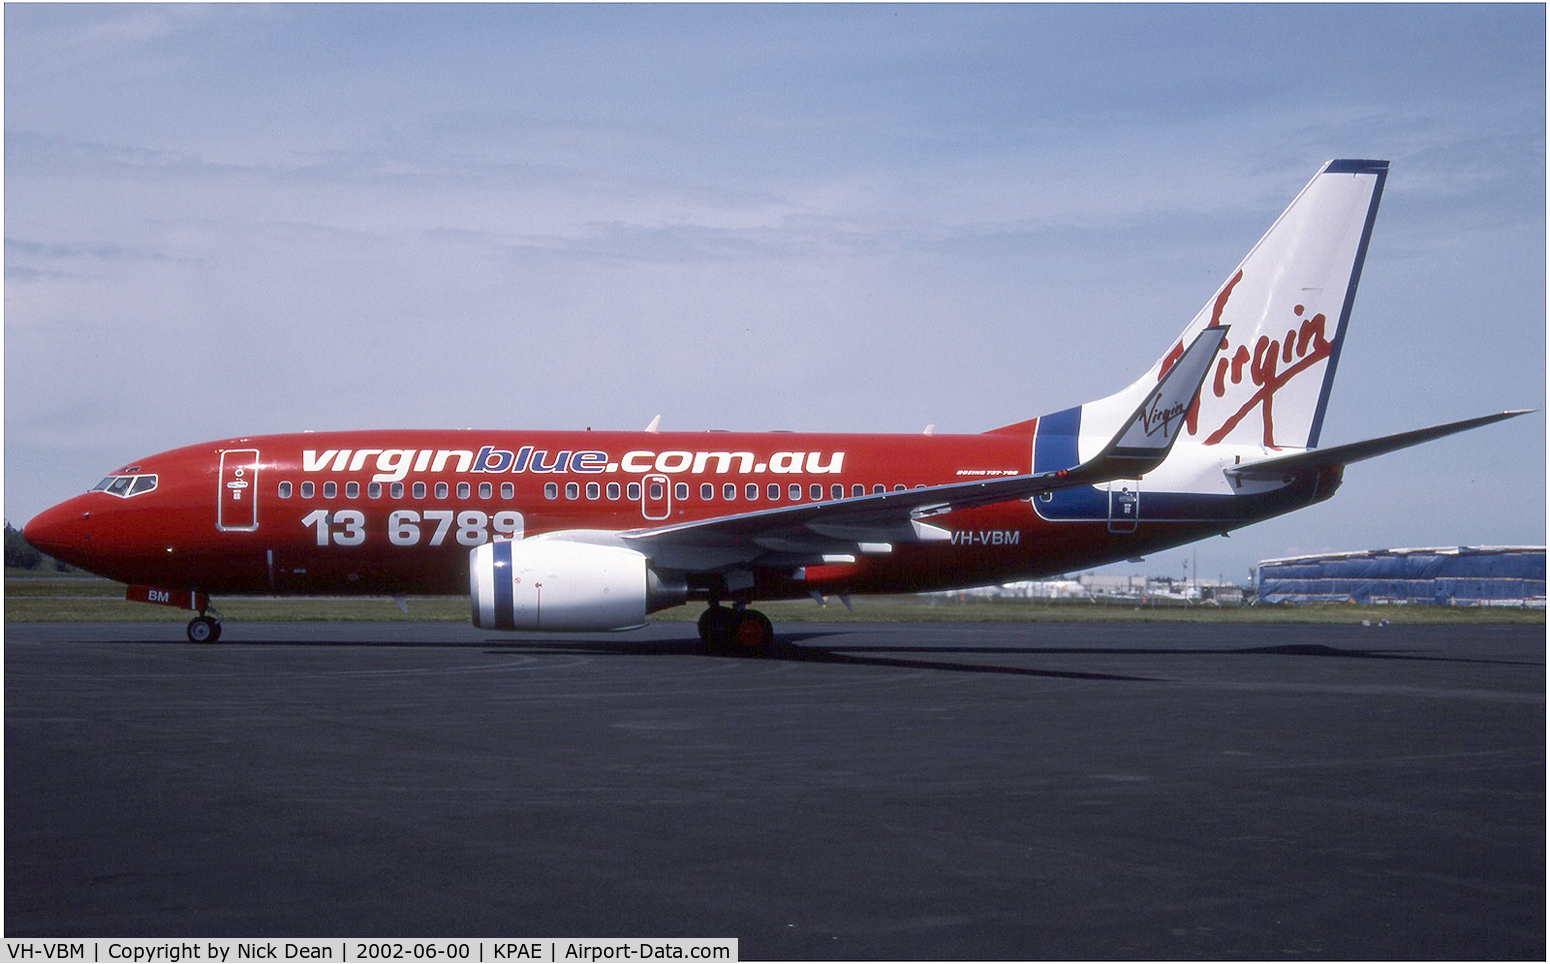 VH-VBM, 2002 Boeing 737-76N C/N 32734, /